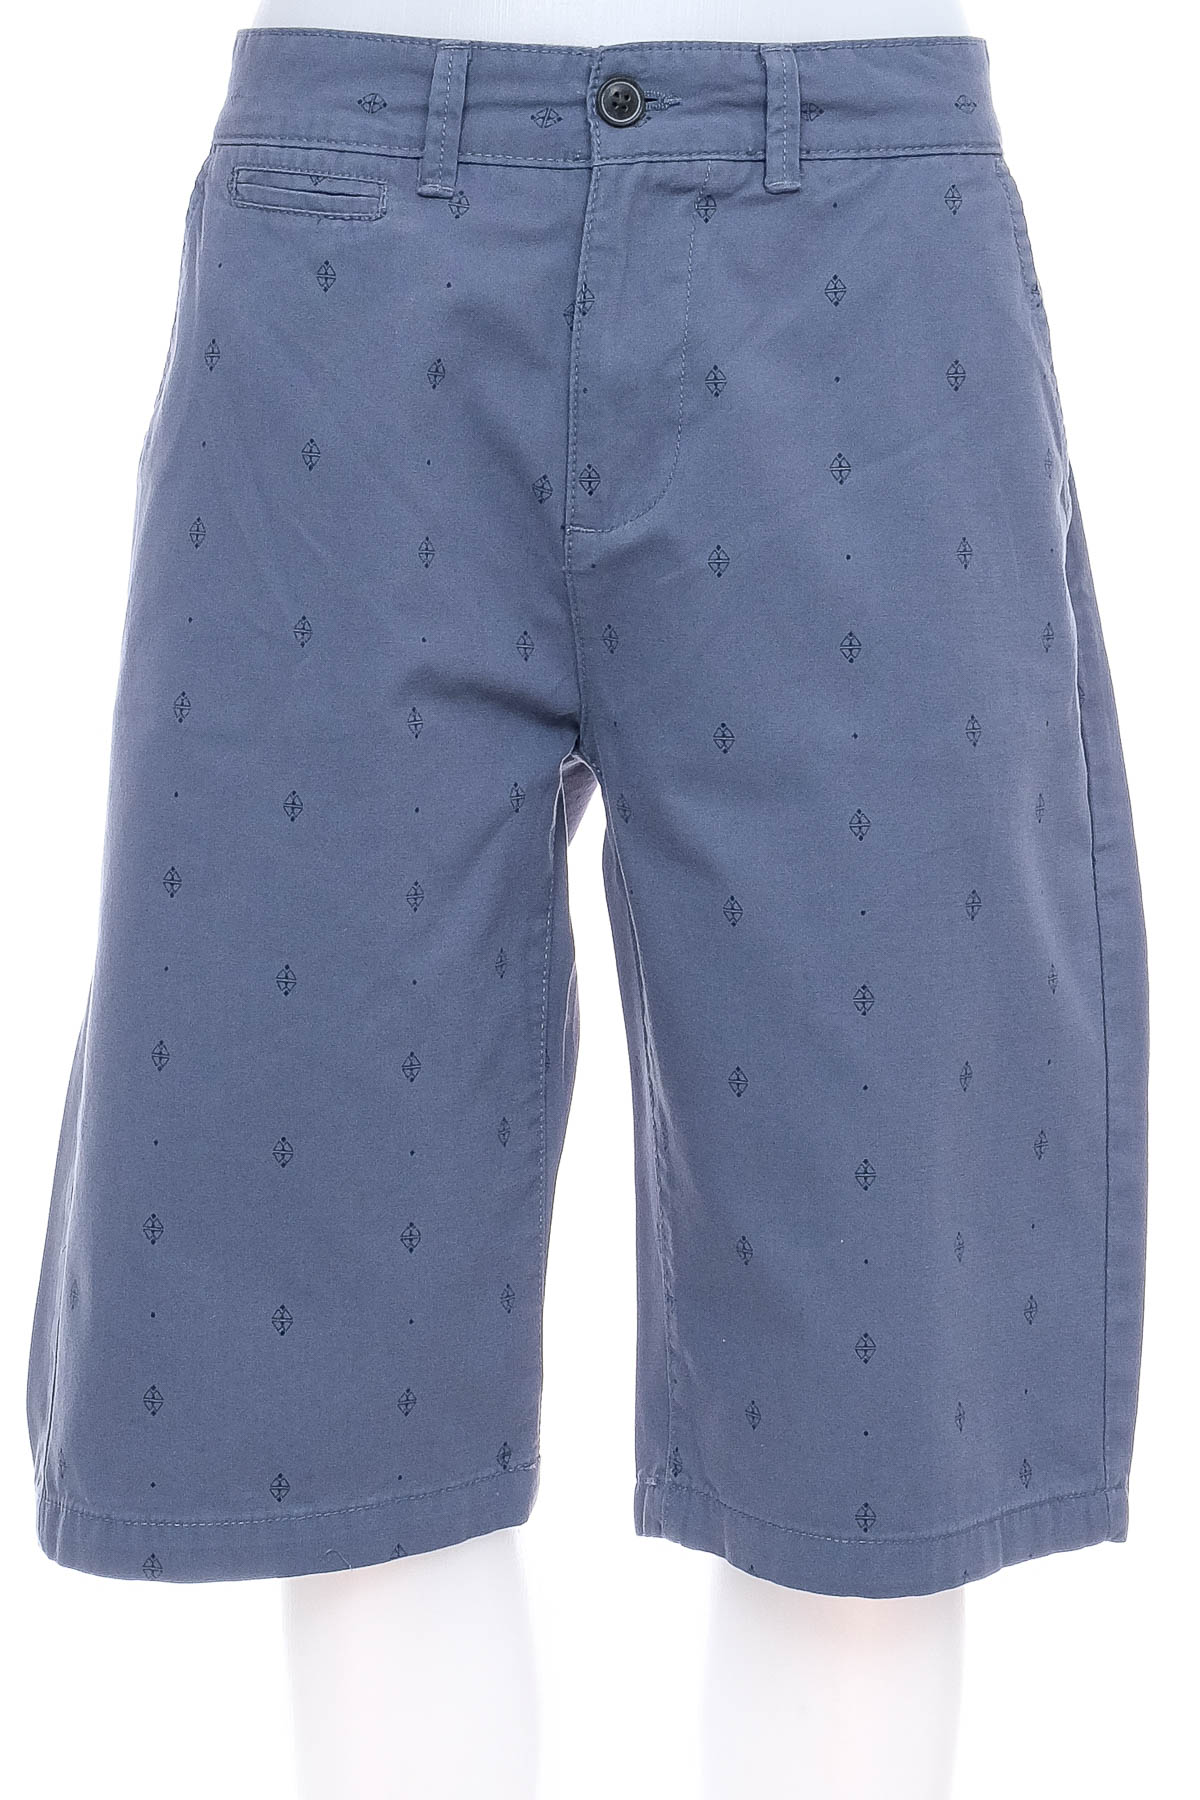 Men's shorts - Greystone - 0